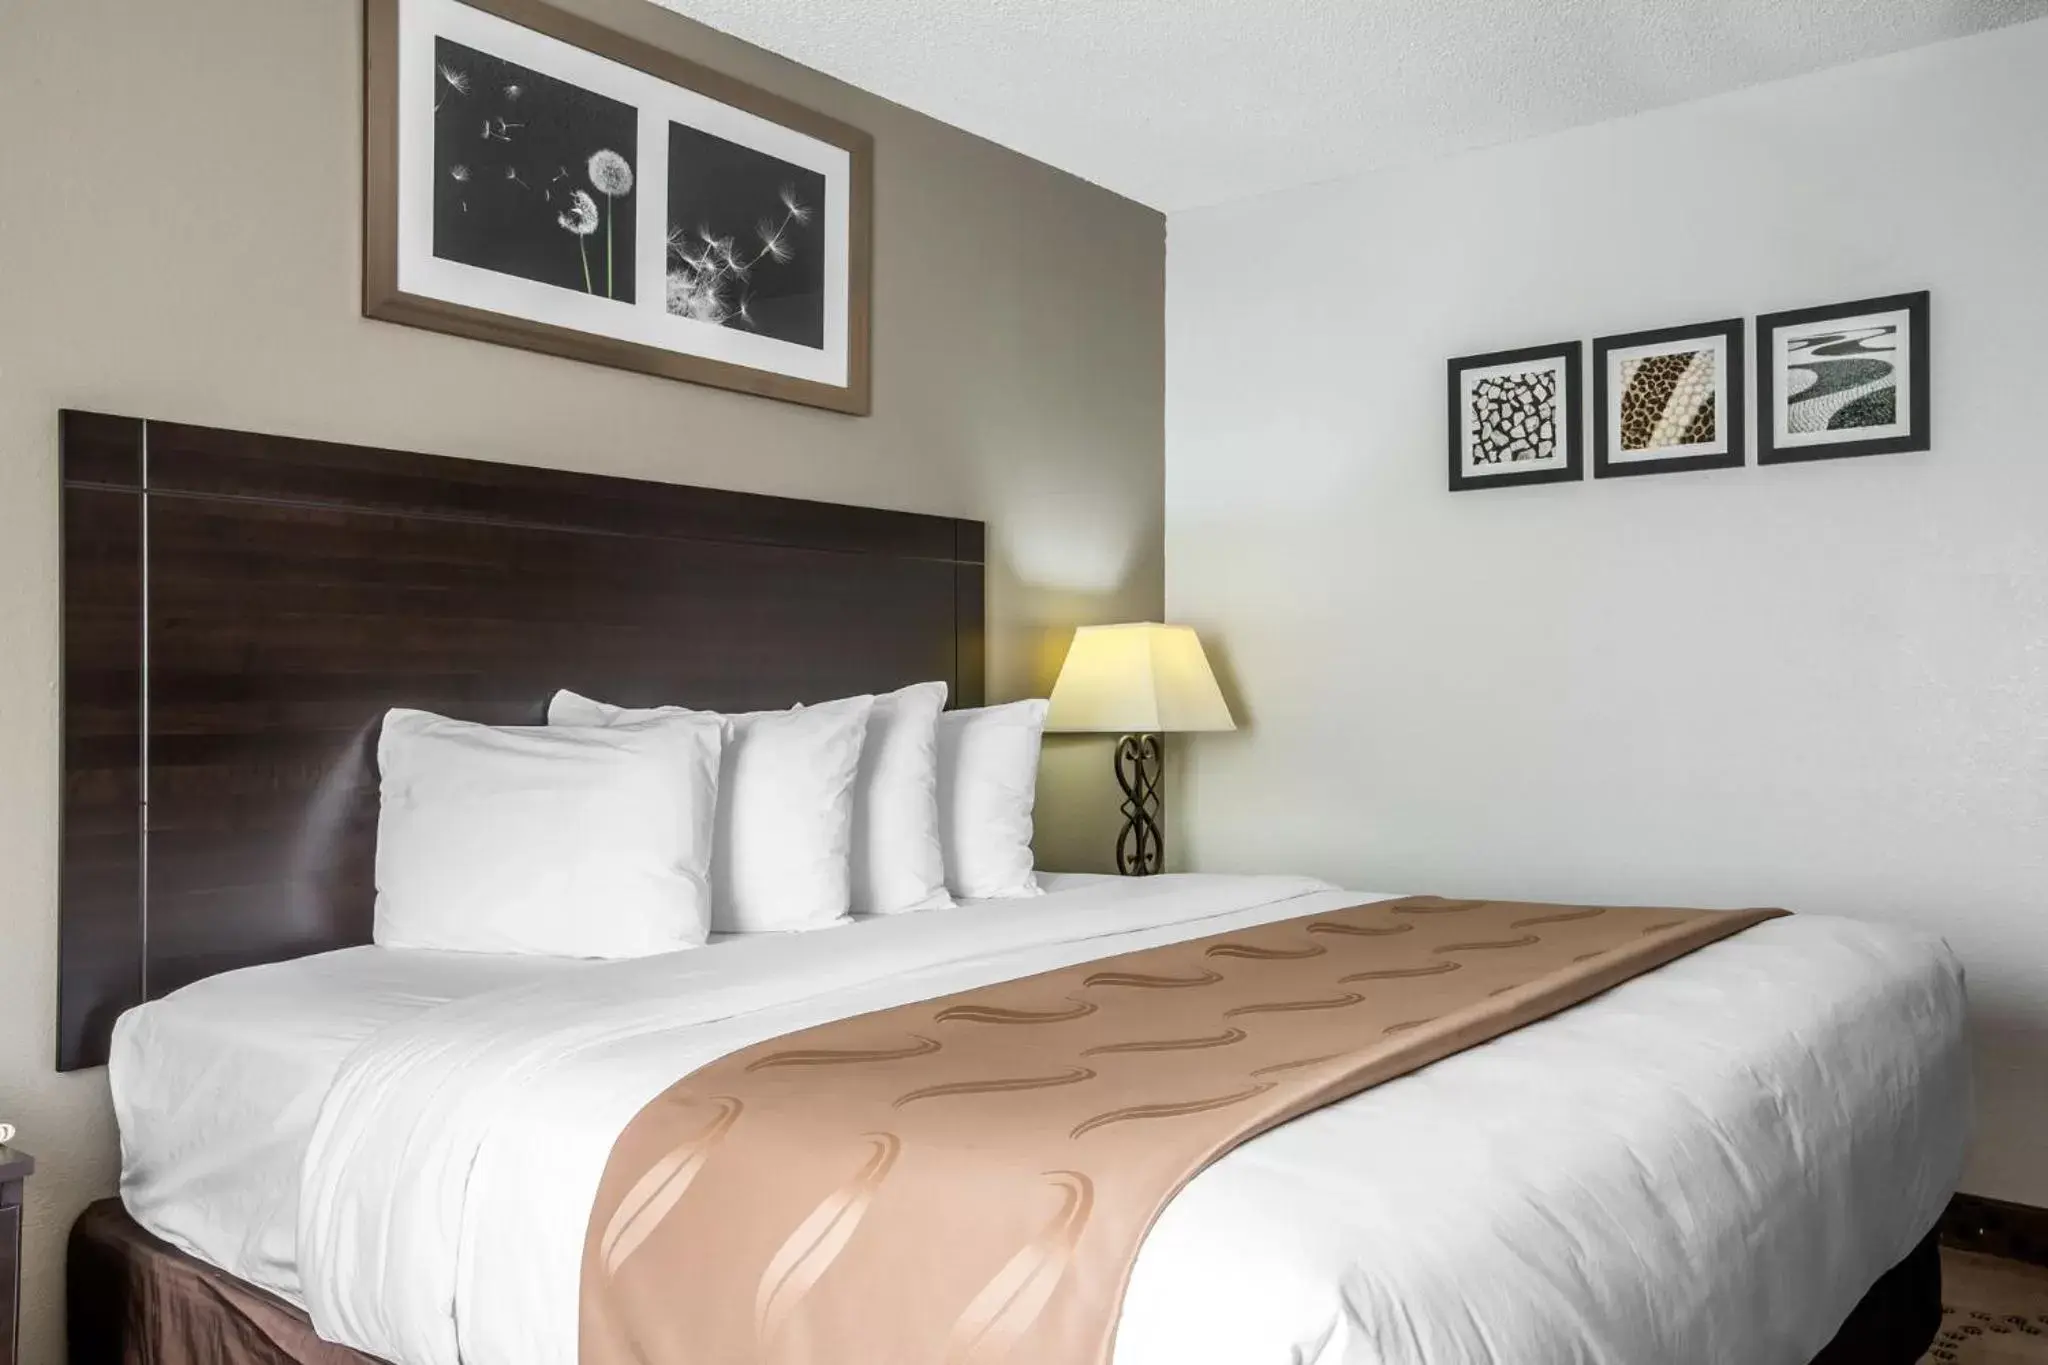 Bed, Room Photo in Quality Inn Stockbridge Atlanta South